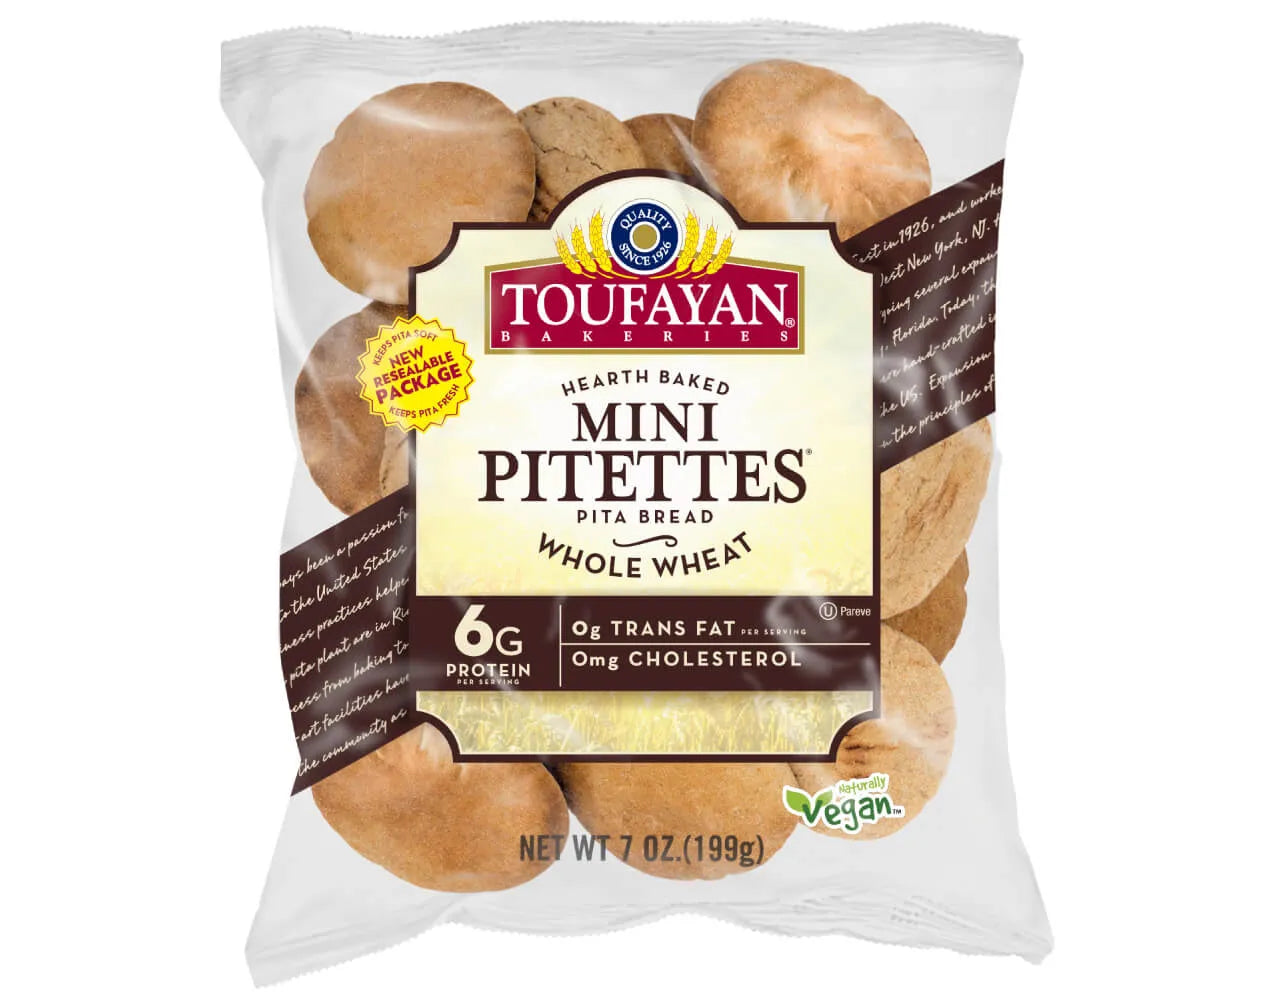 A bag of Toufayan bread mini buns aka Mini Pitettes, whole wheat flavor